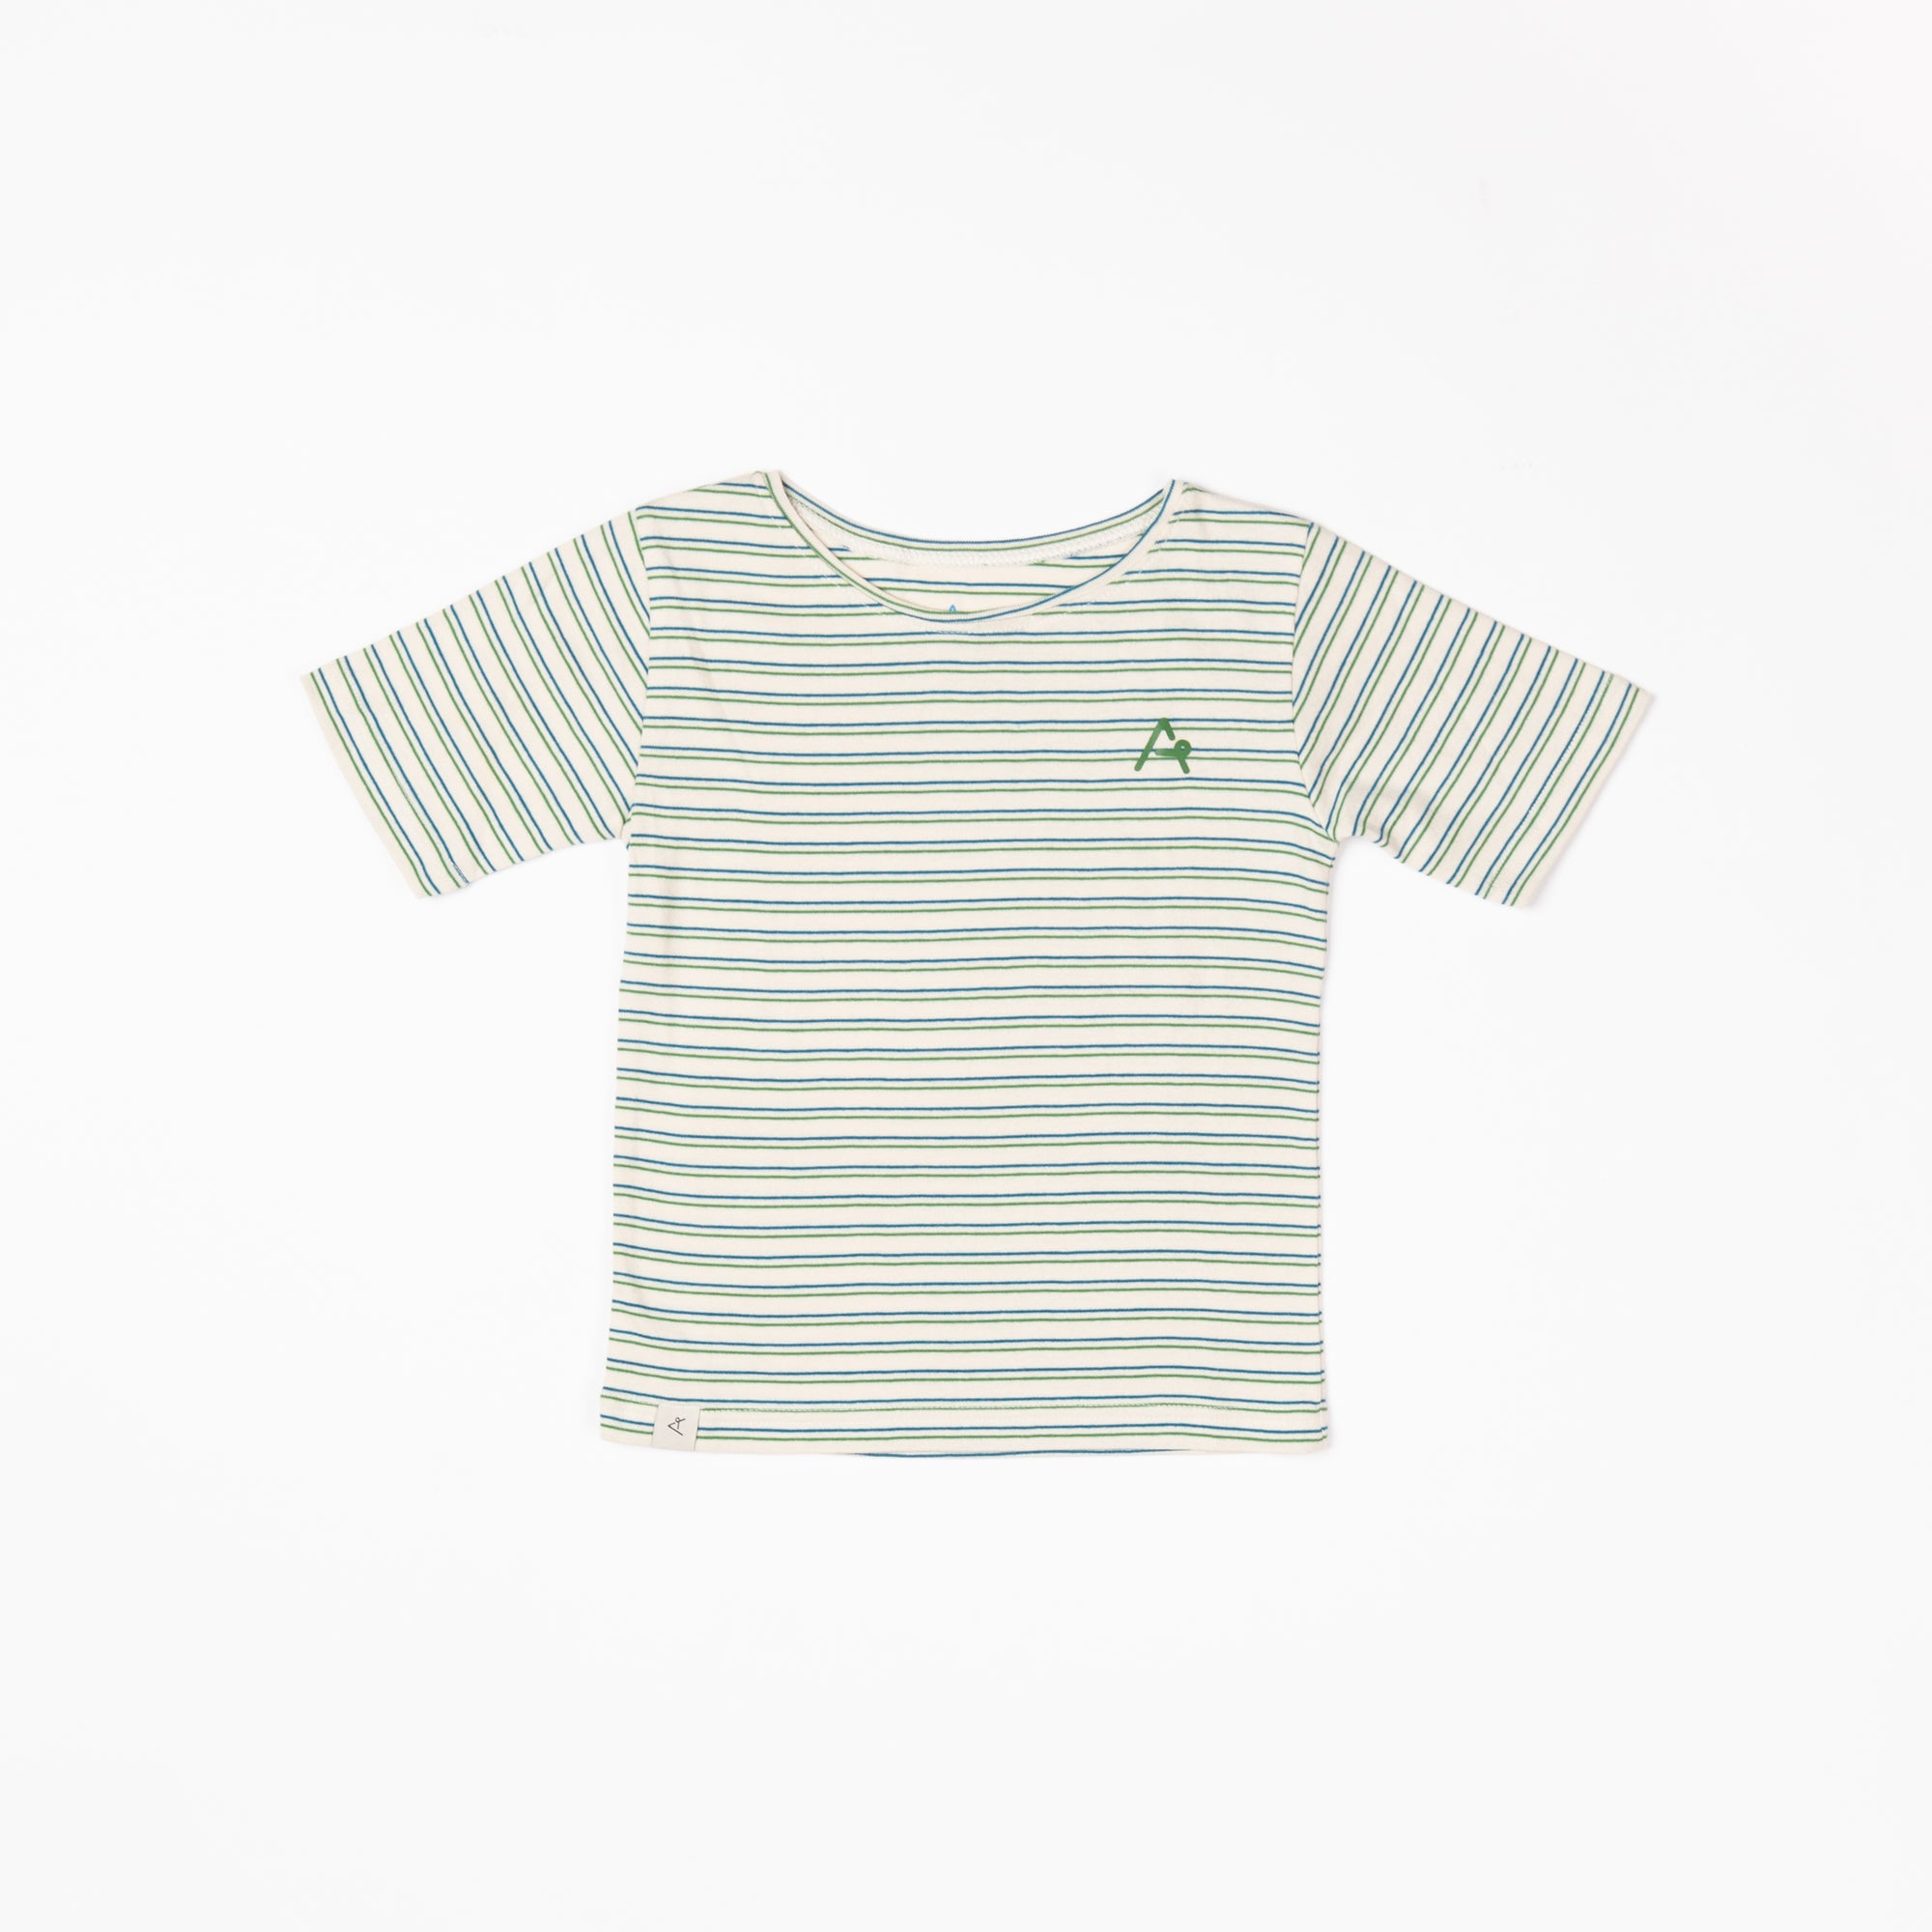 Alba of Denmark - Gate T-shirt Seaport Striped